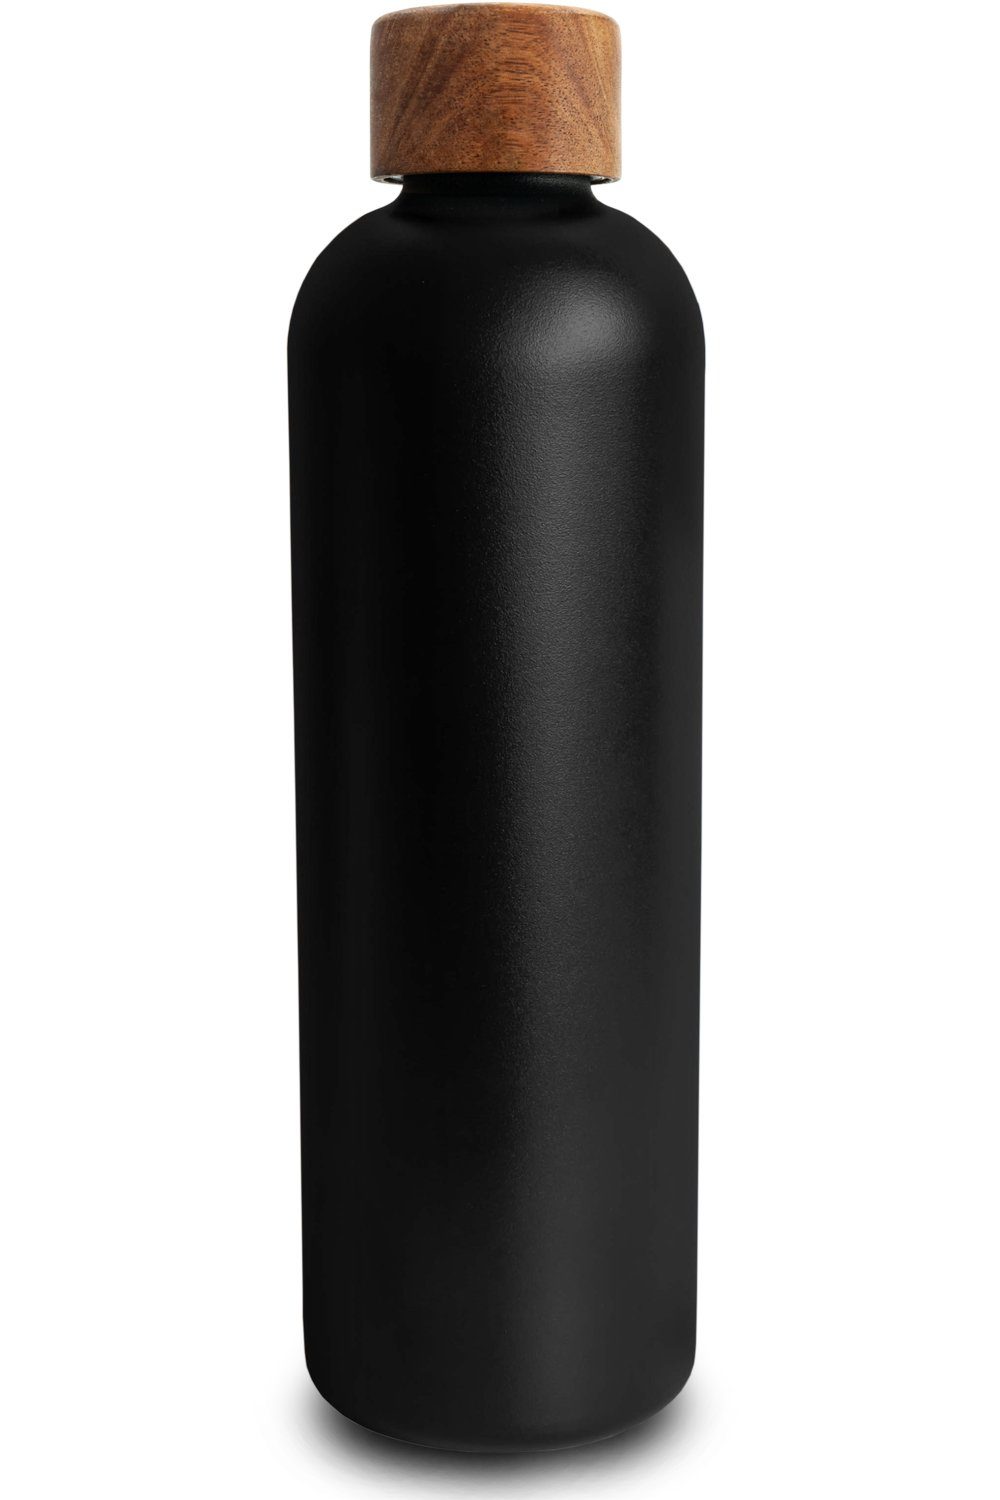 TRENDY AND NEW Trinkflasche T&N Edelstahl Trinkflasche 1 Liter - Wood Edition, Thermosflasche 1l für Büro, auslaufsichere, robuste, isolierte Wasserflasche 1000ml für Kohlensäure, Thermoskanne für unterwegs, Isolierflasche für Tee & Kaffee, hält 14h HEISS 29h EISKALT, Flasche für Sprudel-Wasser Anthracite